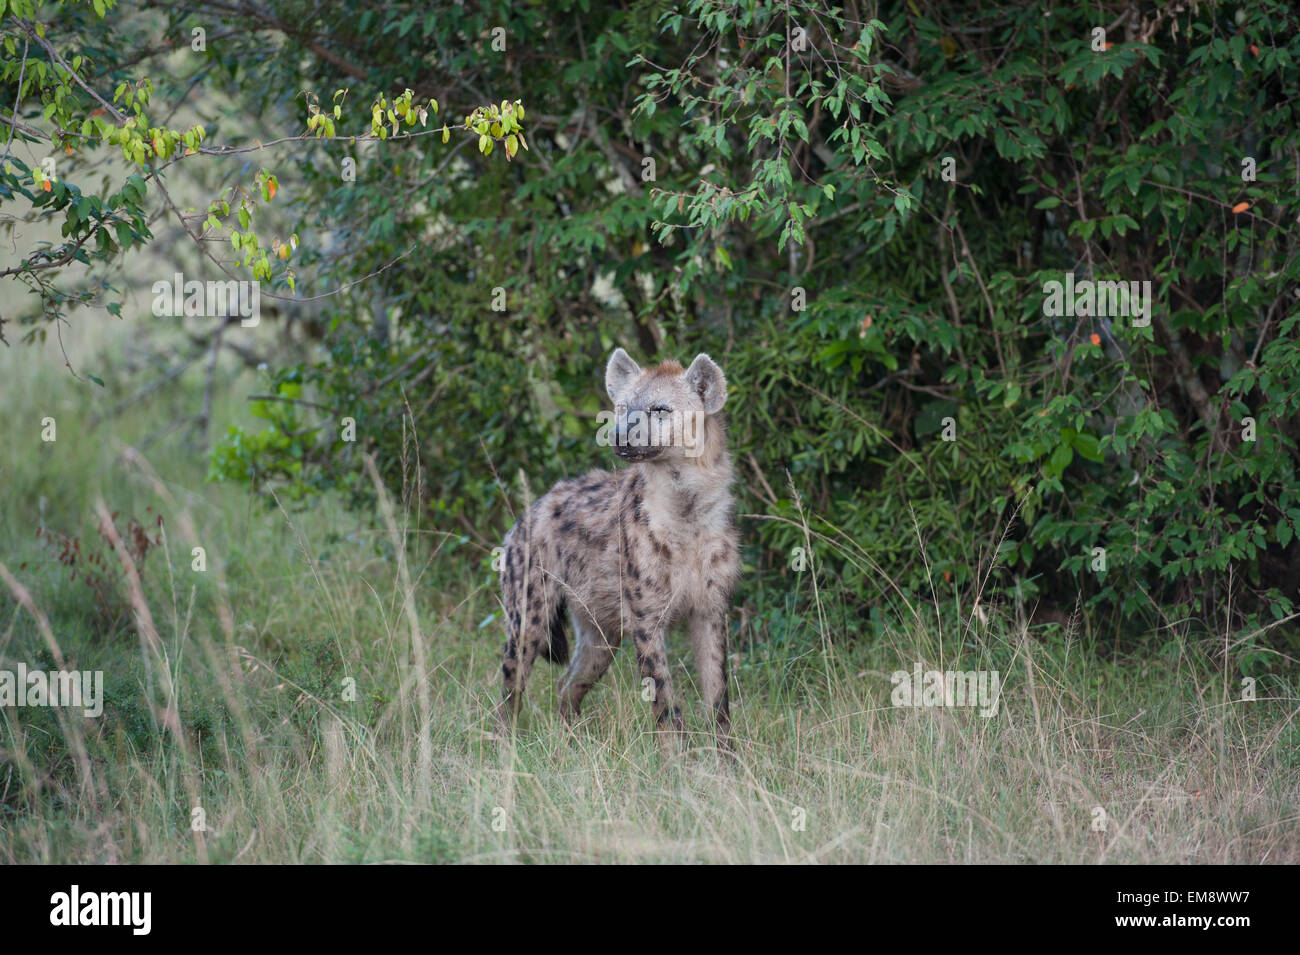 Les hyènes dans la savane de l'Afrique Banque D'Images